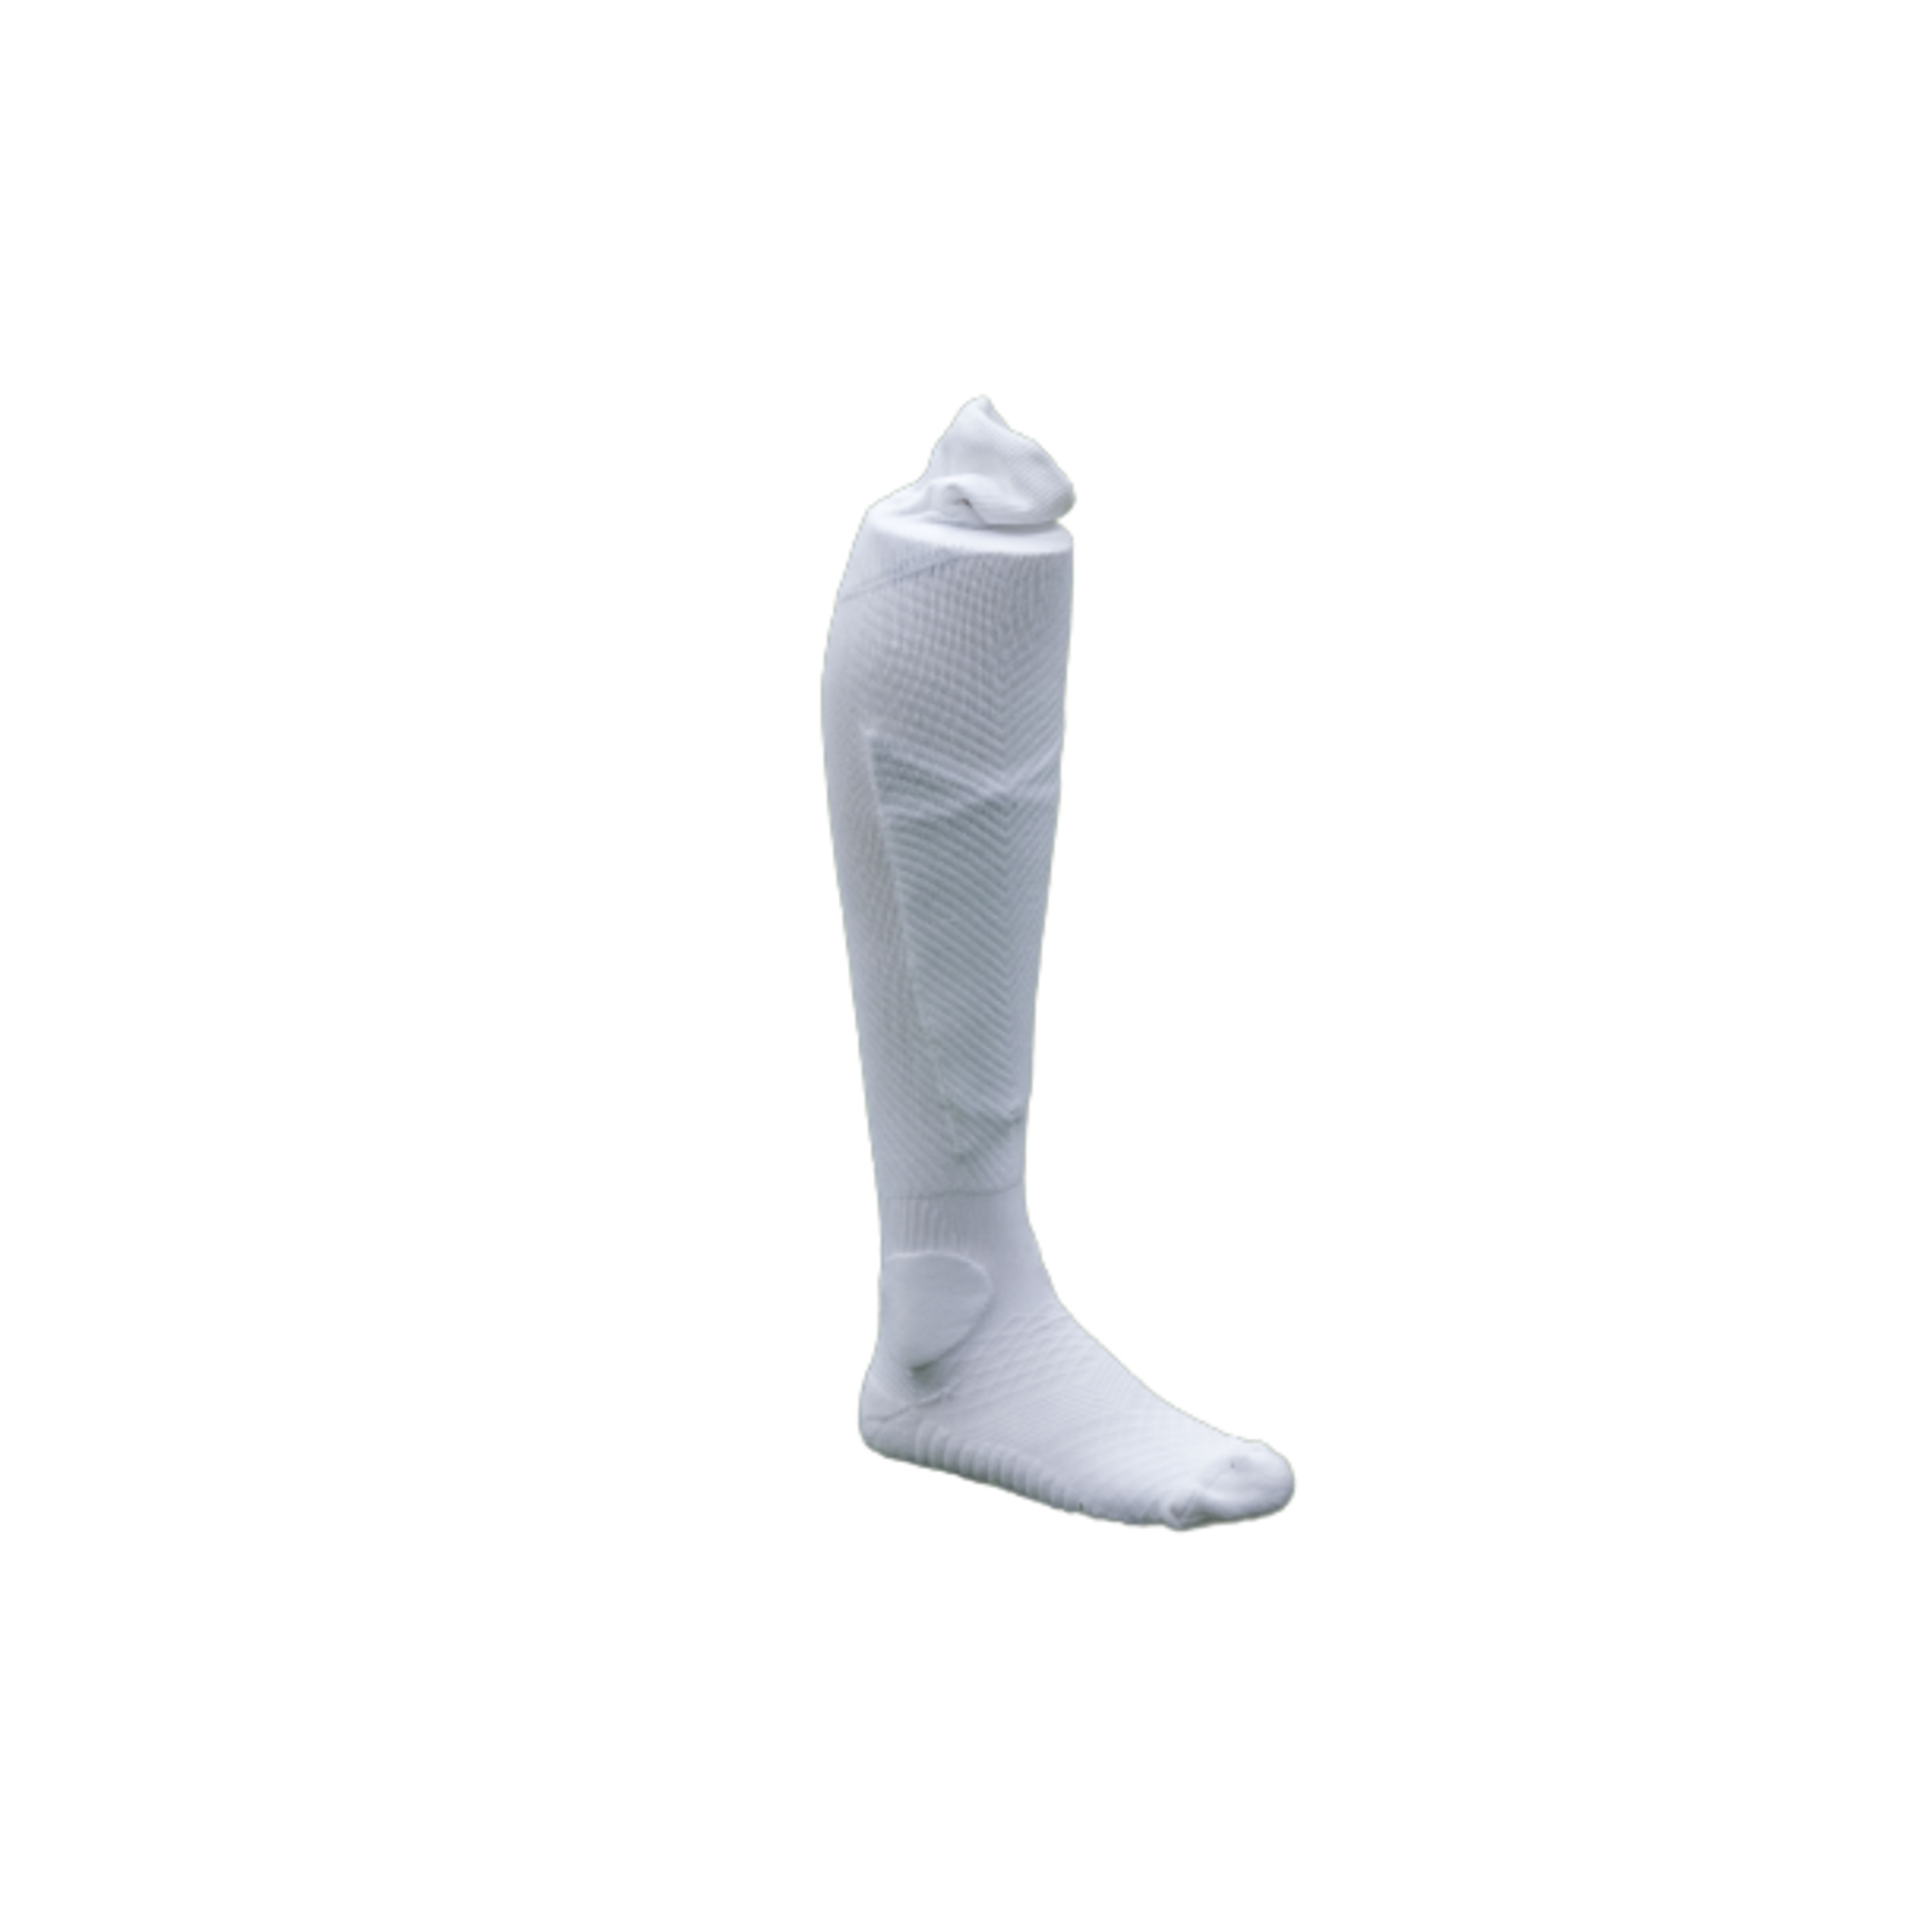 Calcetin Sockapro De Futbol - Blanco - Fijación patentada de espinilleras  MKP